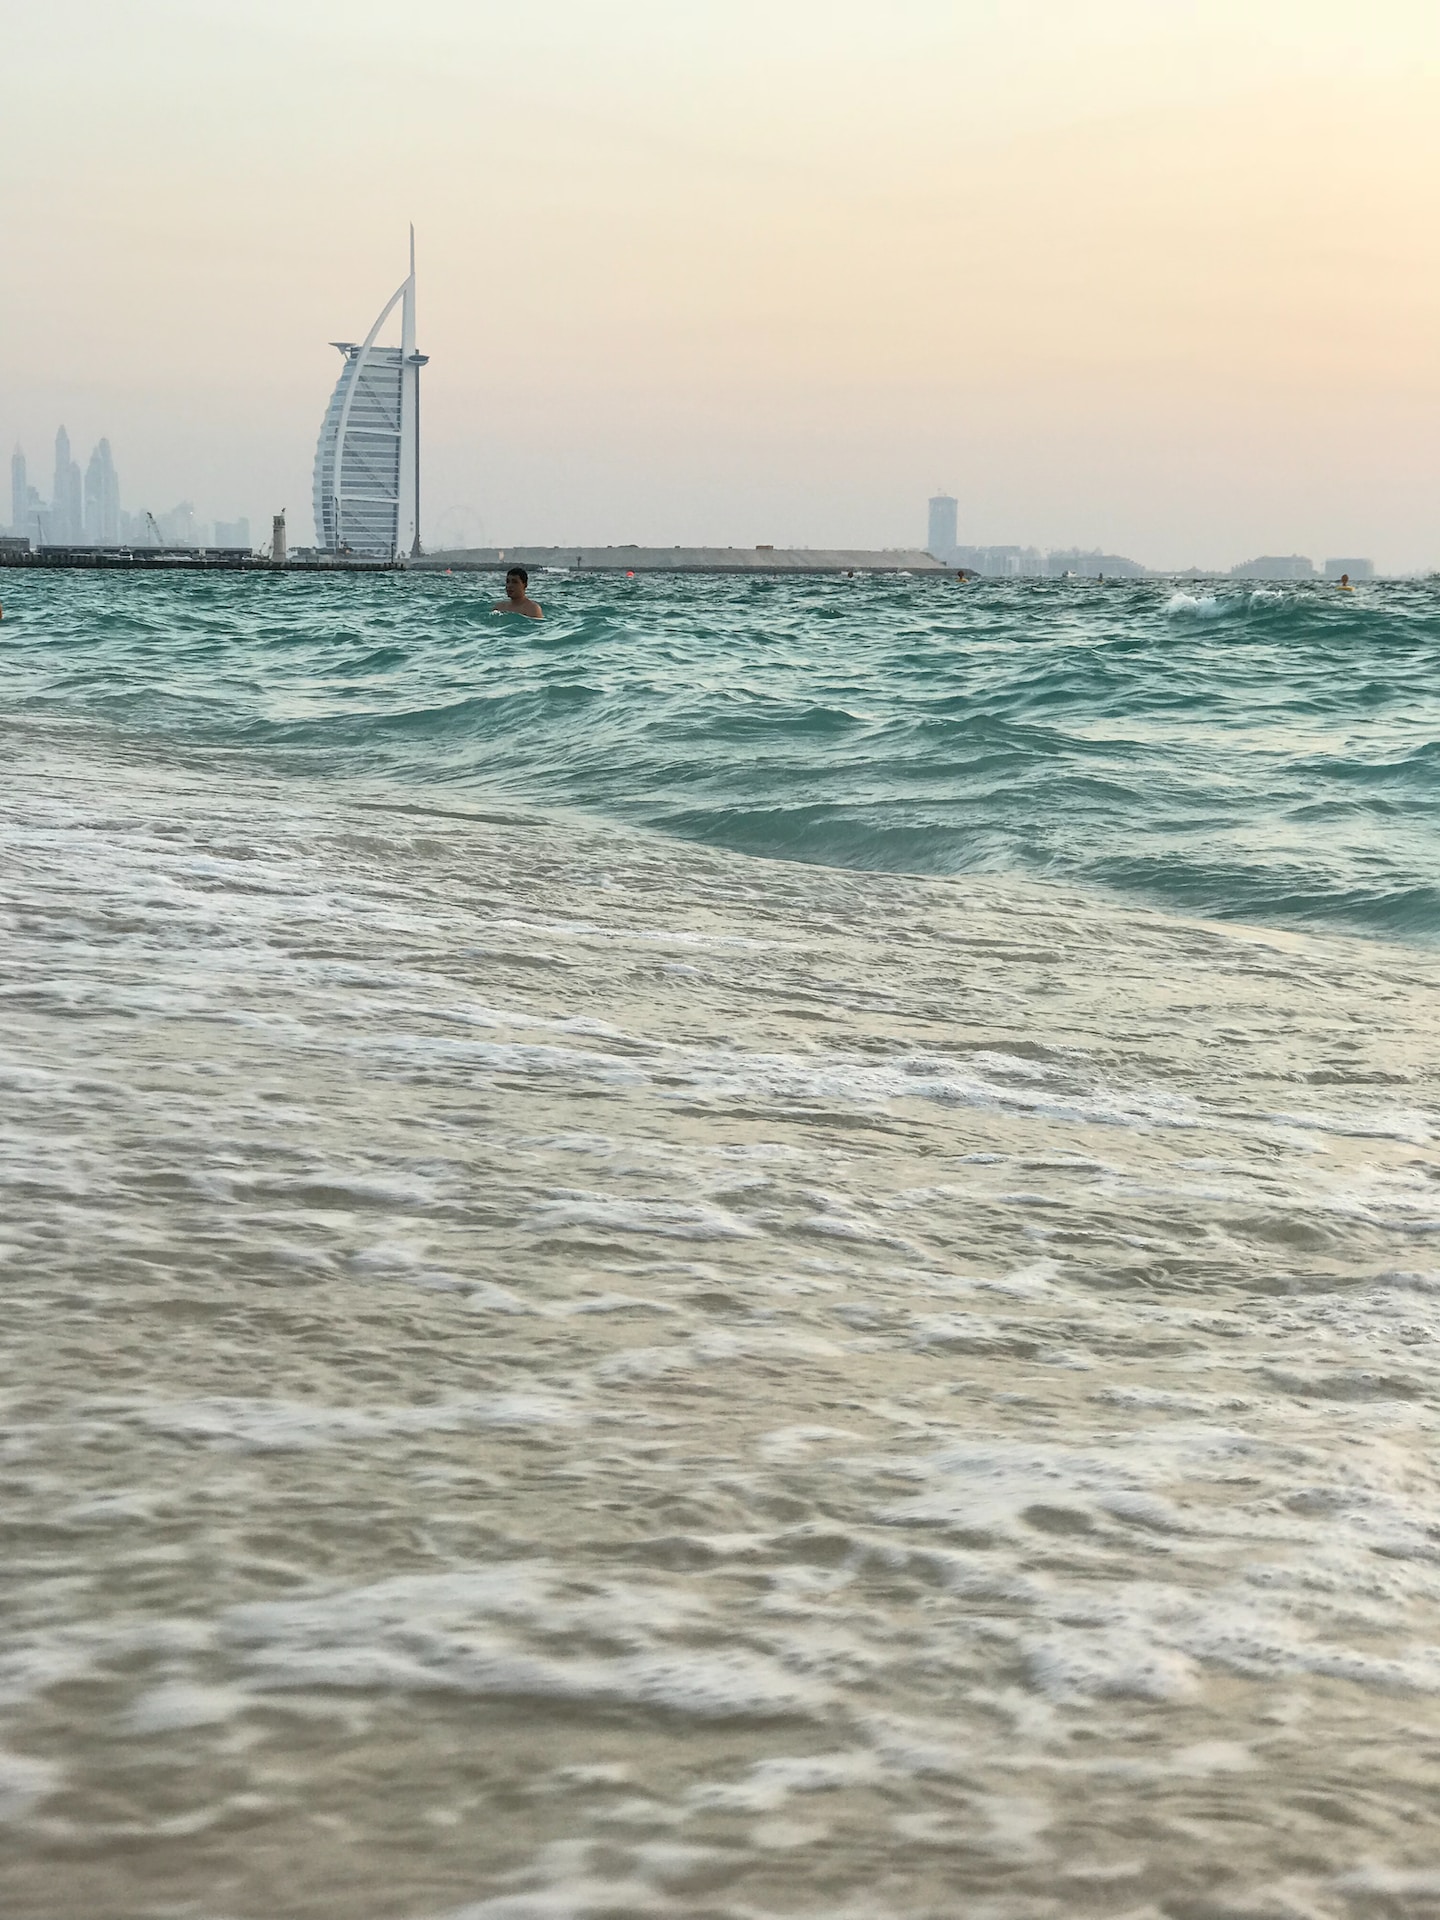 Is Qatar richer than UAE?